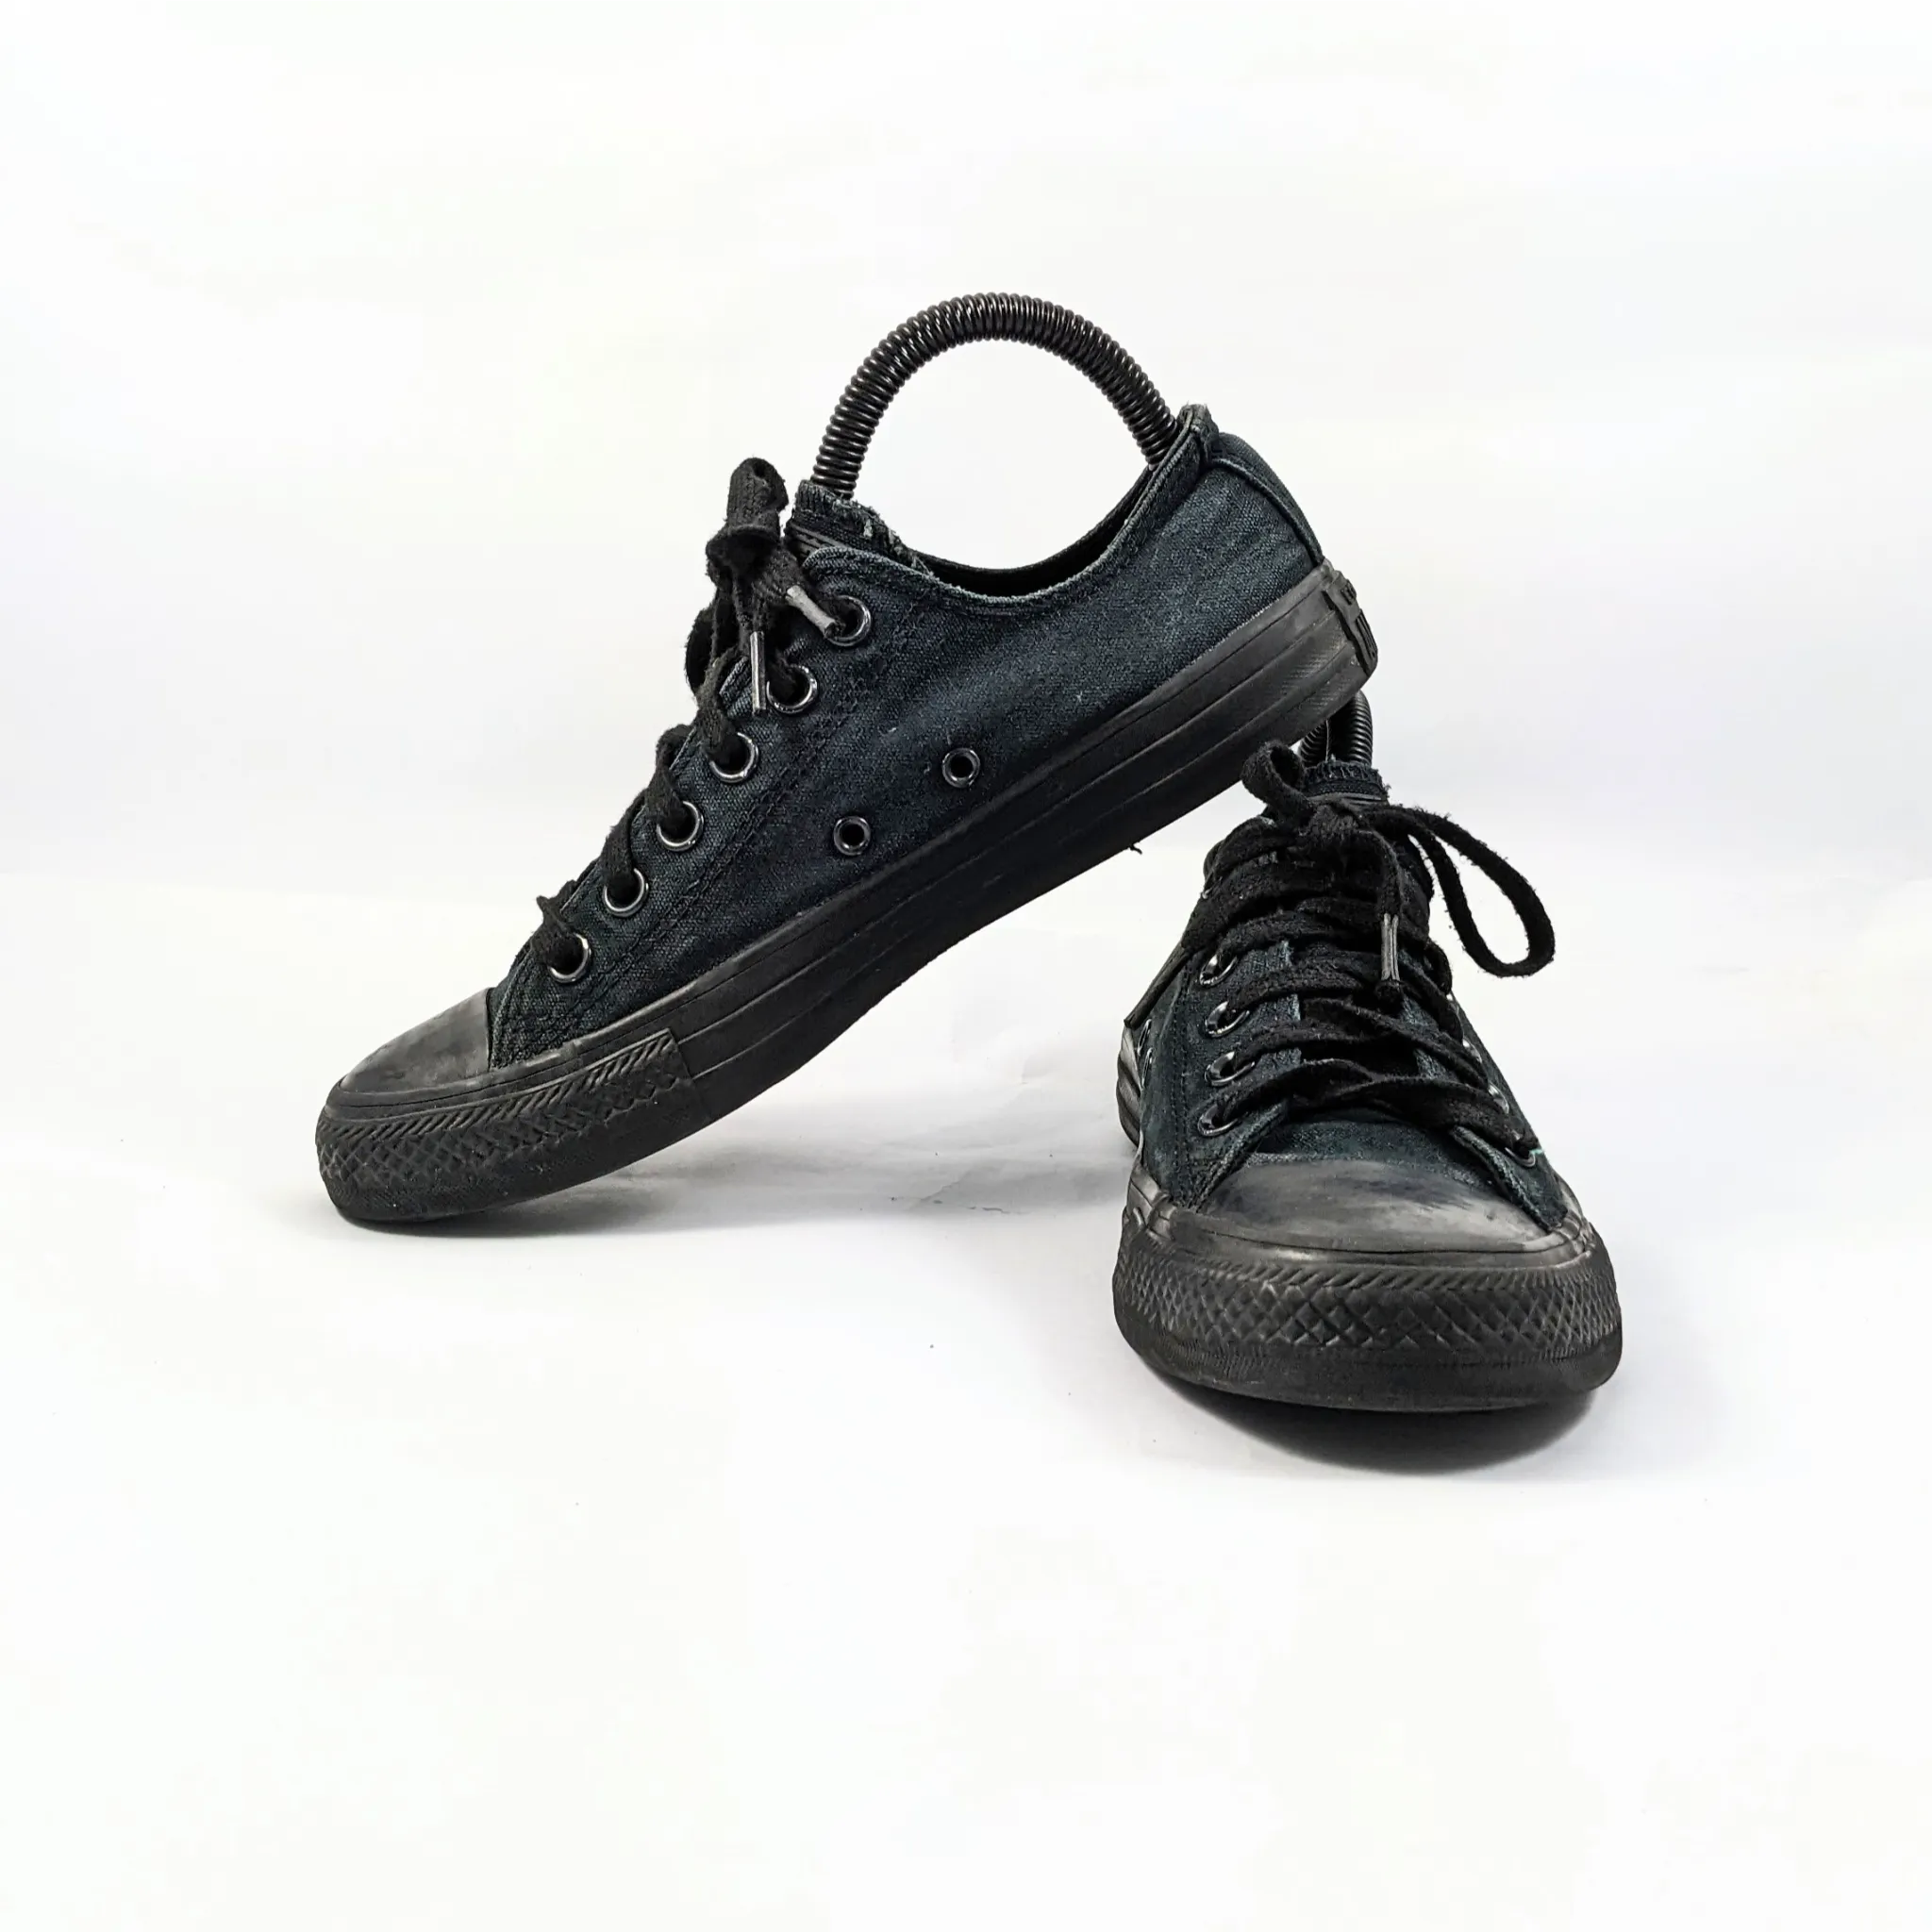 Converse Black Sneakers